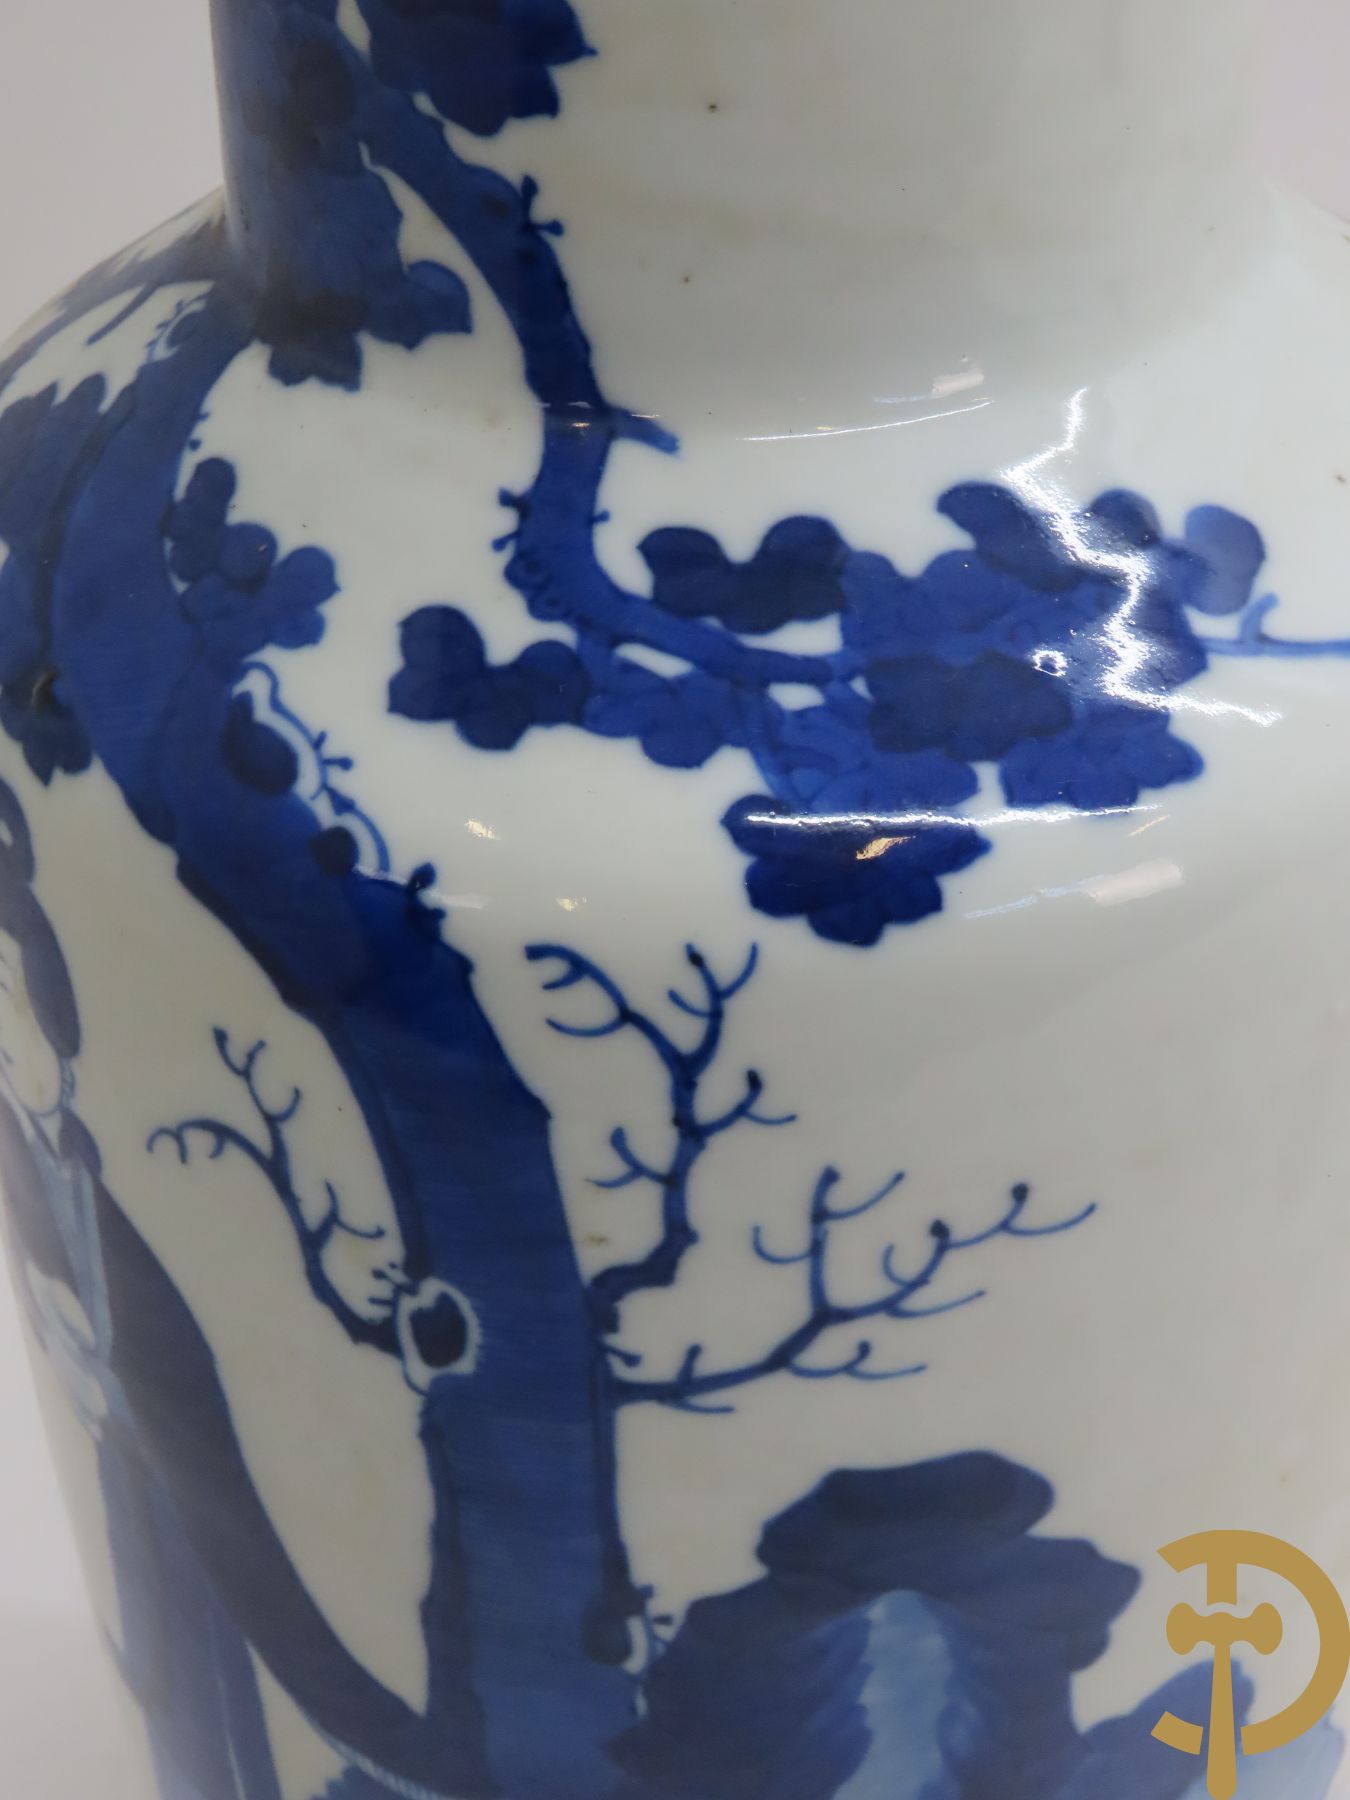 Chinese porseleinen blauw/wit vaas met decor van 4 dames in landschap